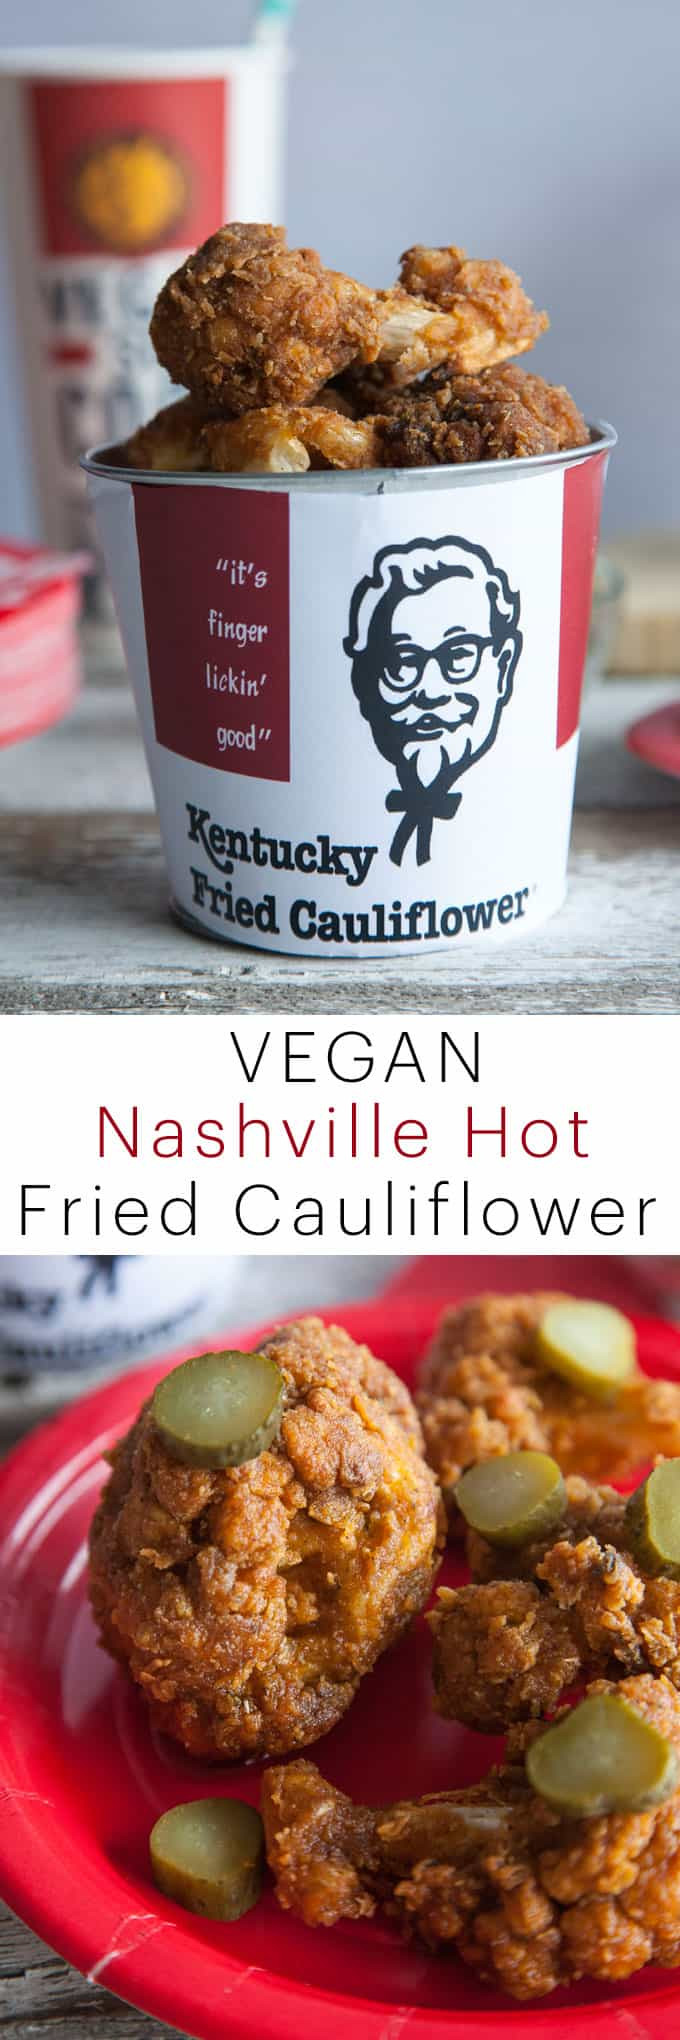 Vegetarian Fried Chicken
 KFC Nashville Hot Fried Chicken Recipe using Cauliflower